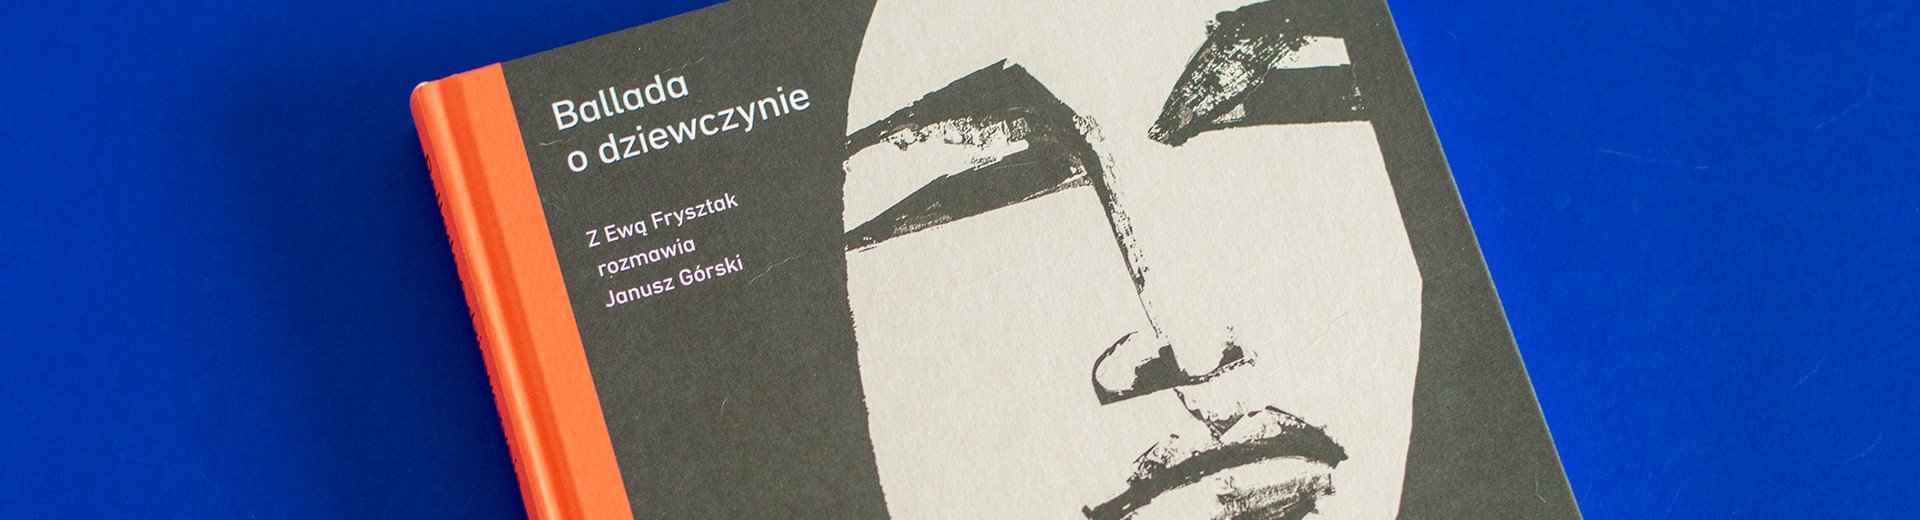 Okładka artykułu Janusz Górski w rozmowie z Ewą Frysztak — „Ballada o dziewczynie” – recenzja